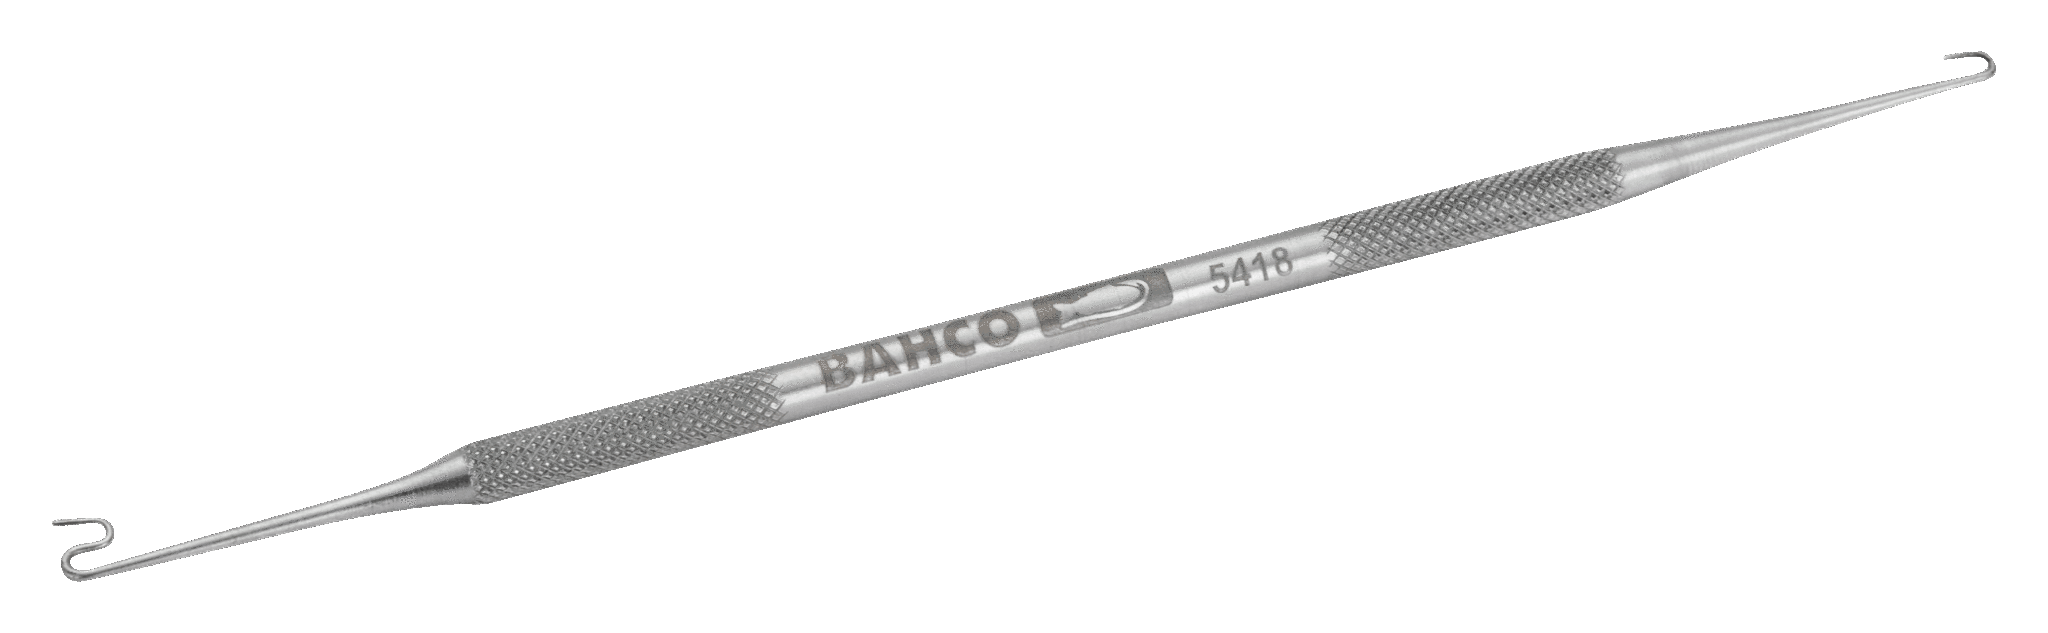 Крючок двусторонний для захвата и укладки проводников BAHCO 5418